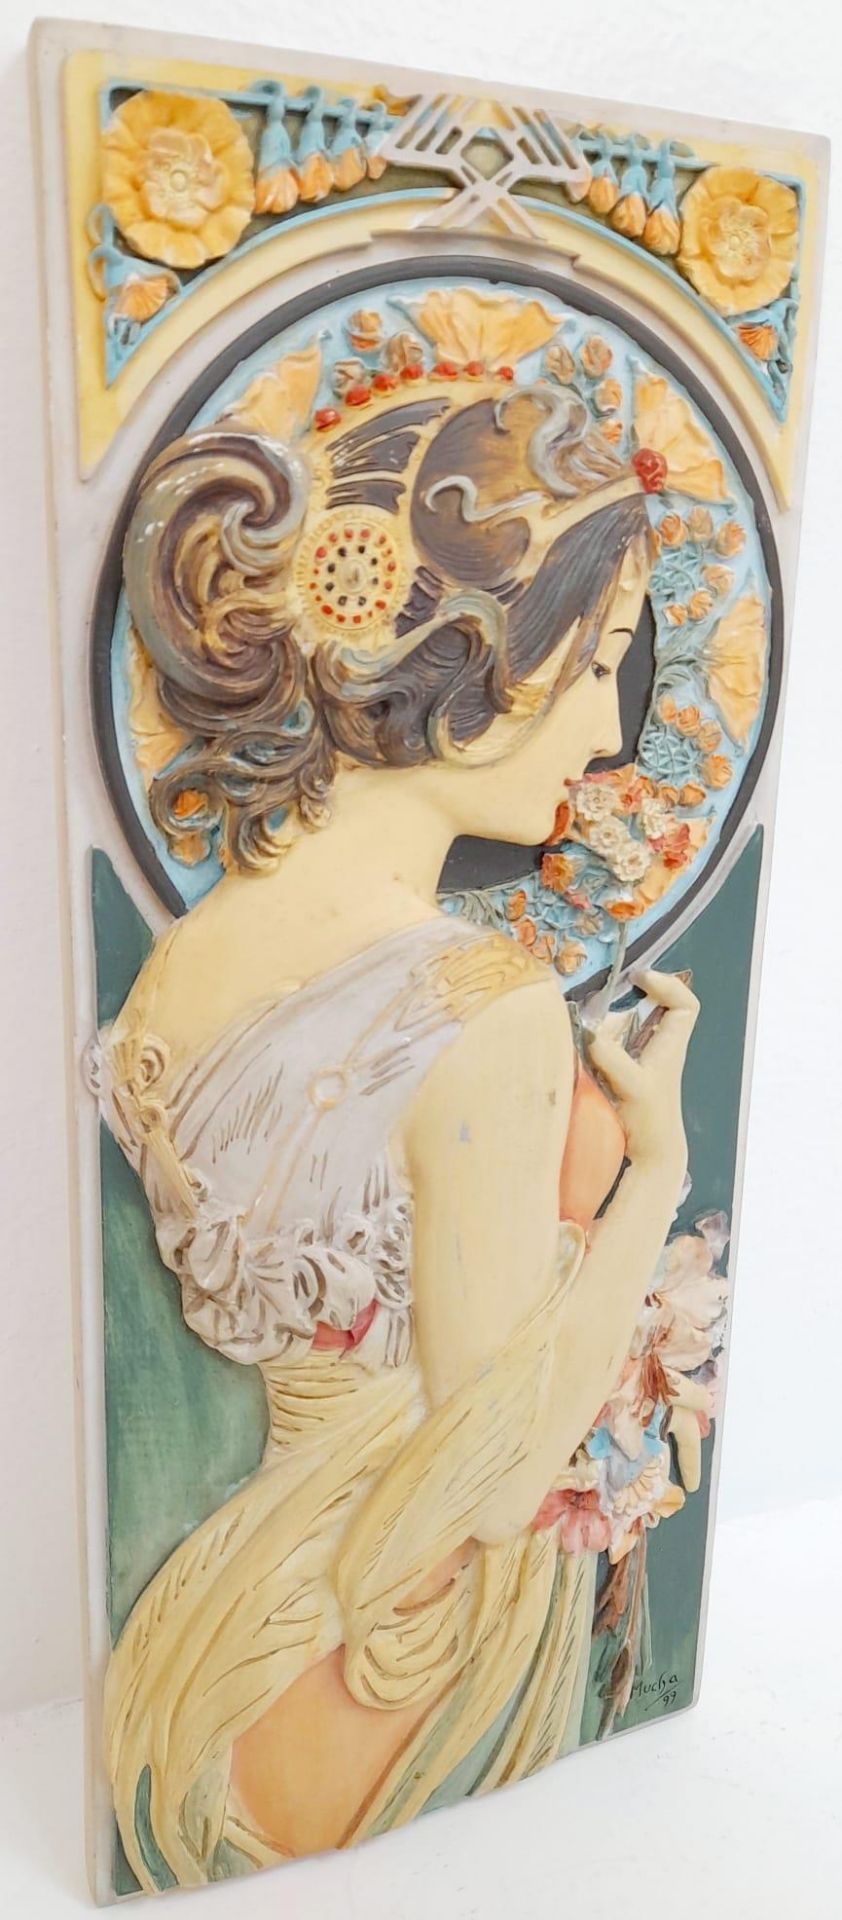 A Vintage 1999 Dated Art Nouveau Design Plaster Relief Wall Plaque 28 x 12cm. Excellent Condition. - Image 4 of 7